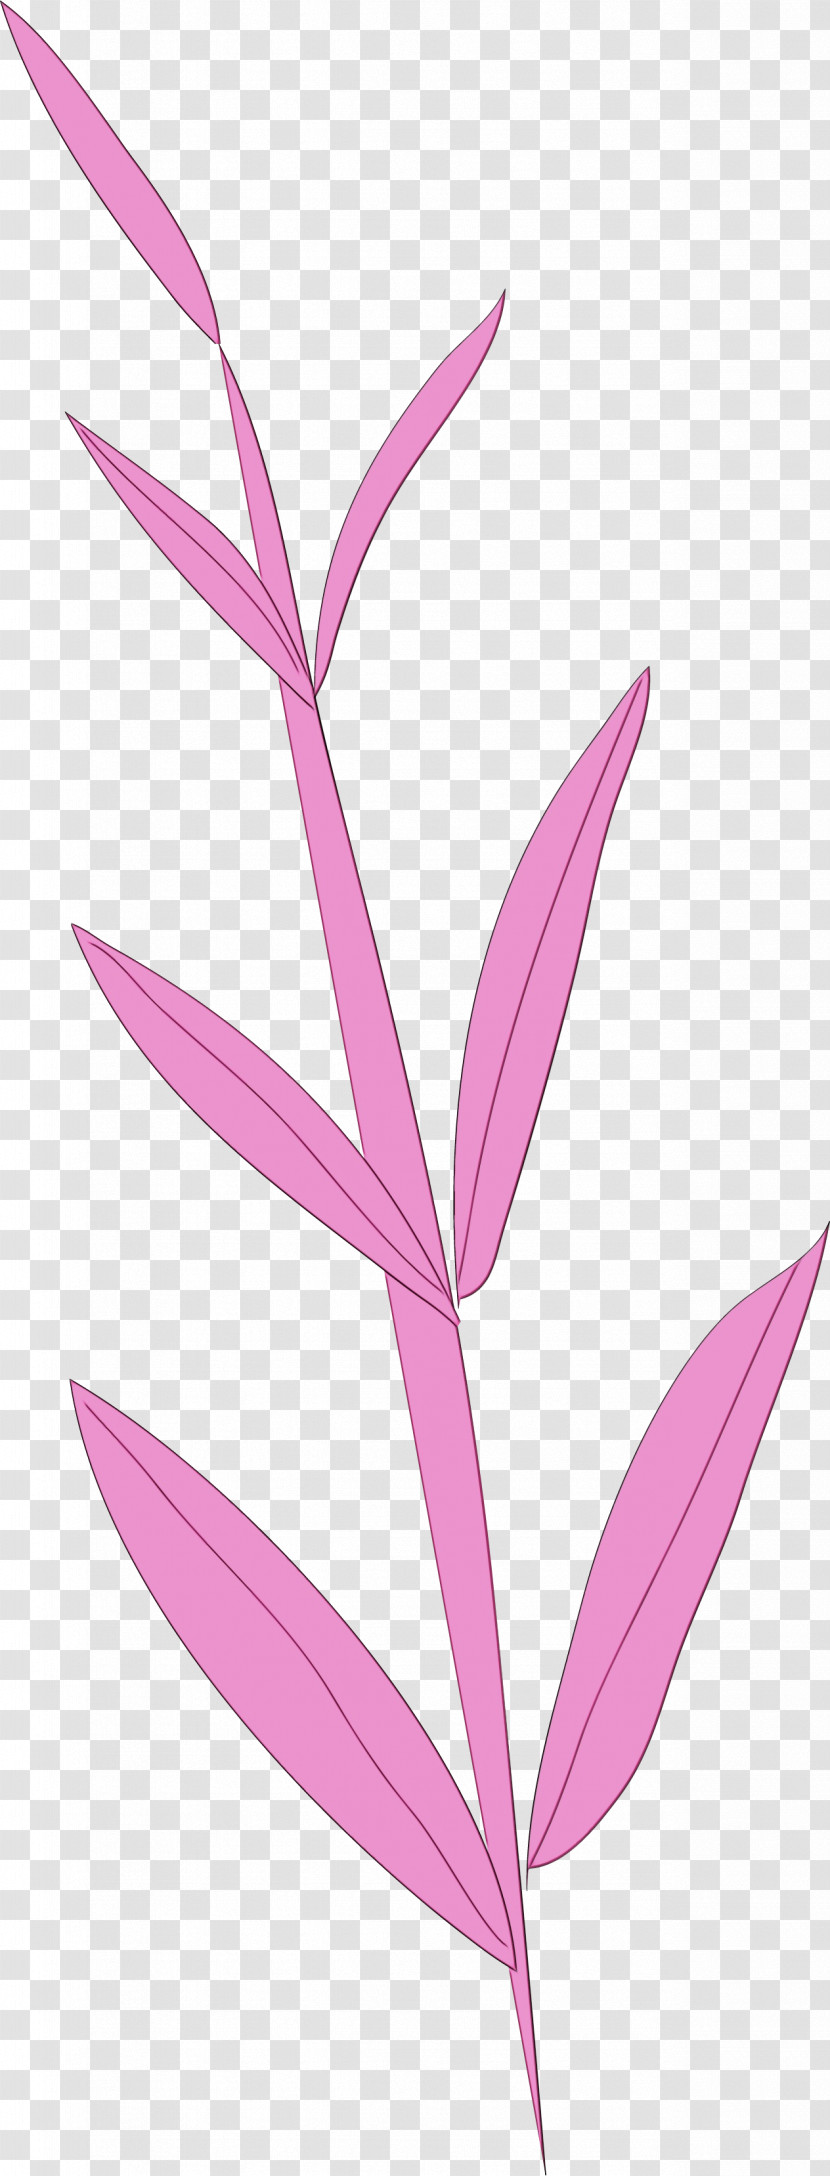 Plant Stem Petal Leaf Pink M Line Transparent PNG